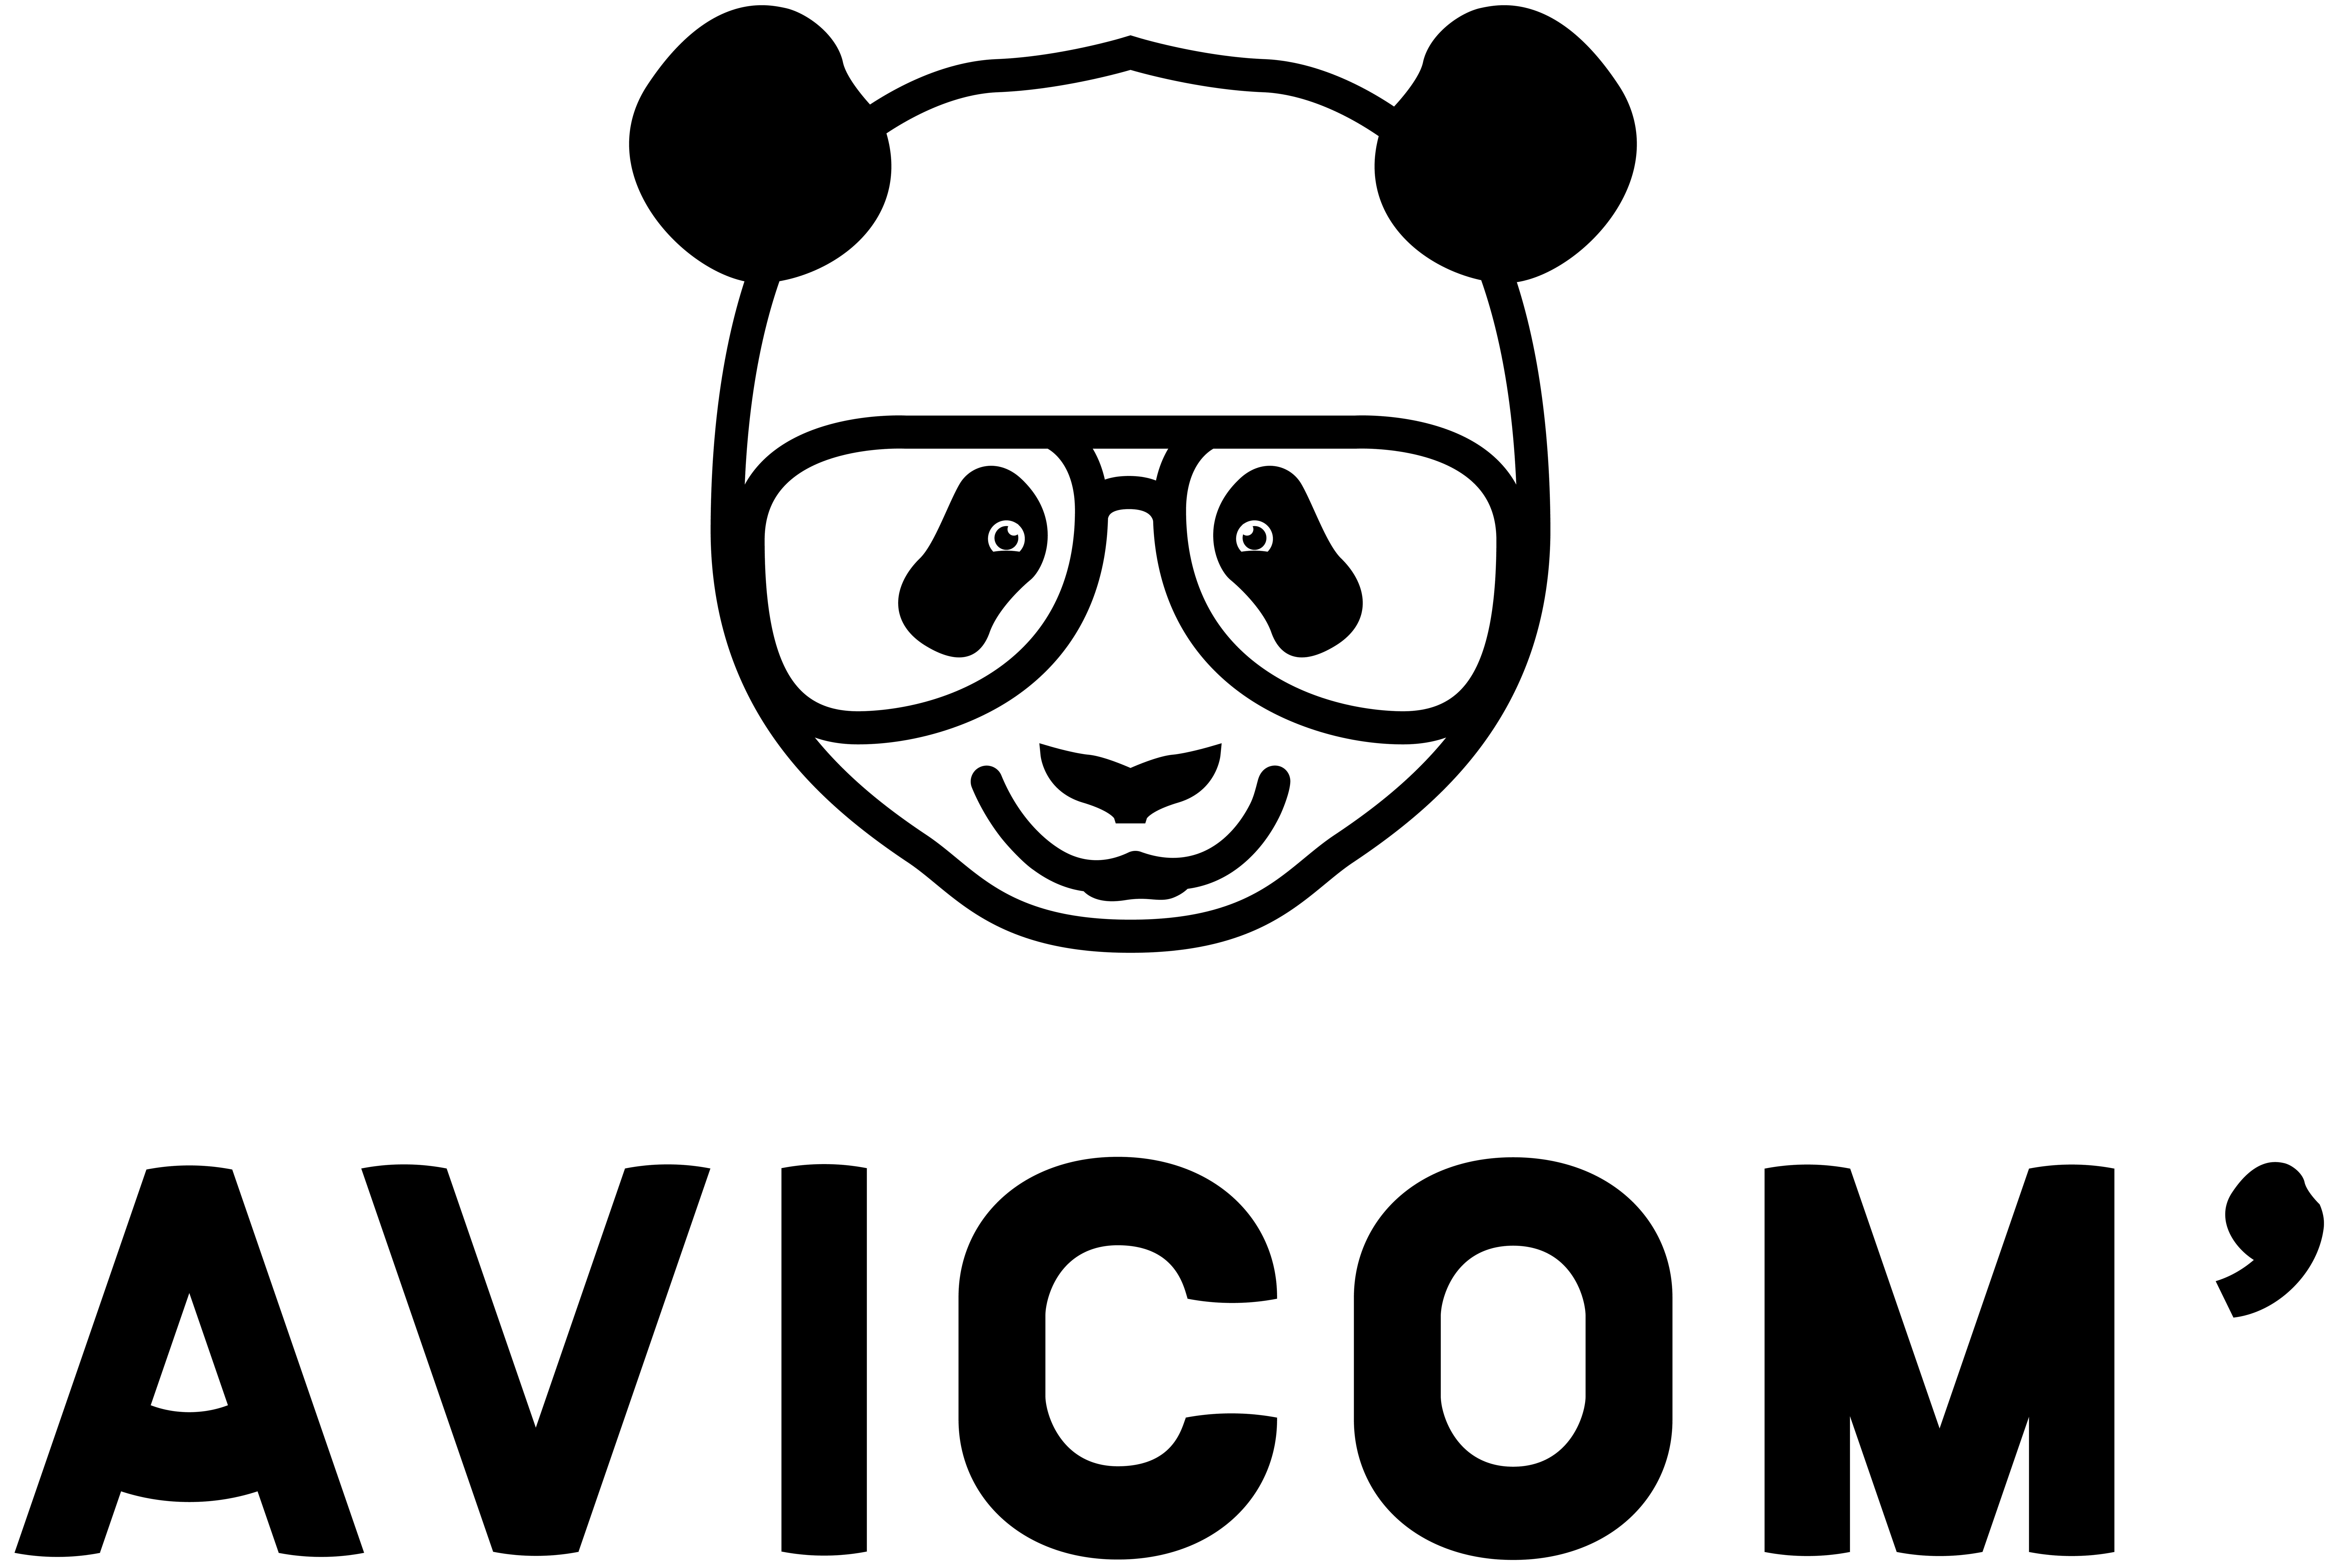 AGENCE AVICOM’ logo